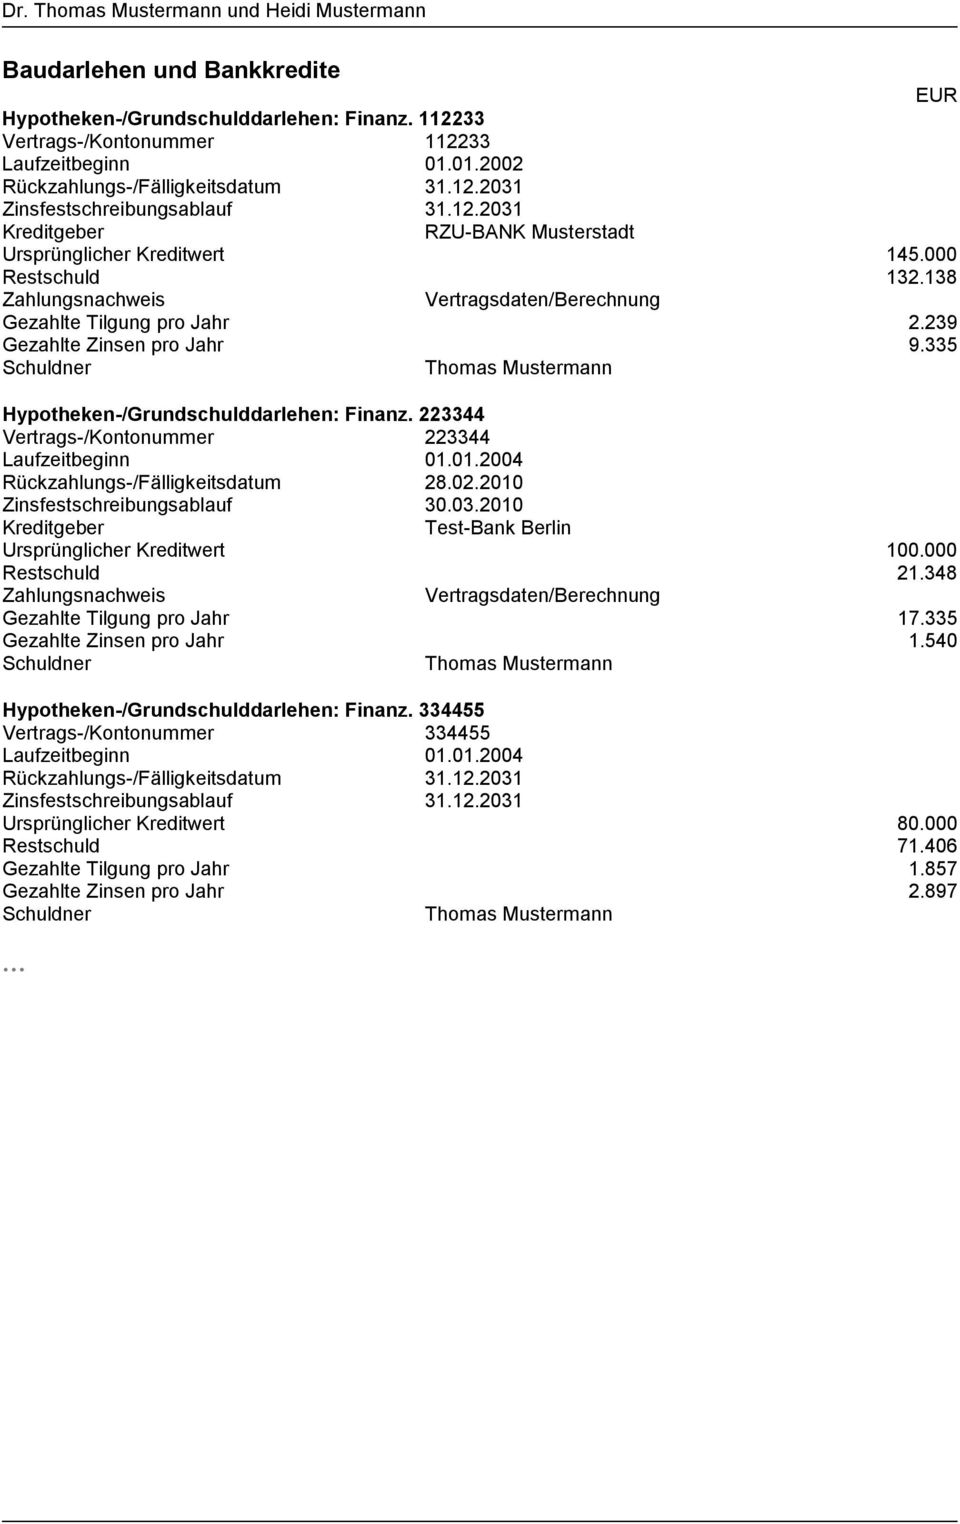 335 Schuldner Thomas Mustermann Hypotheken-/Grundschulddarlehen: Finanz. 223344 Vertrags-/Kontonummer 223344 Laufzeitbeginn 01.01.2004 Rückzahlungs-/Fälligkeitsdatum 28.02.